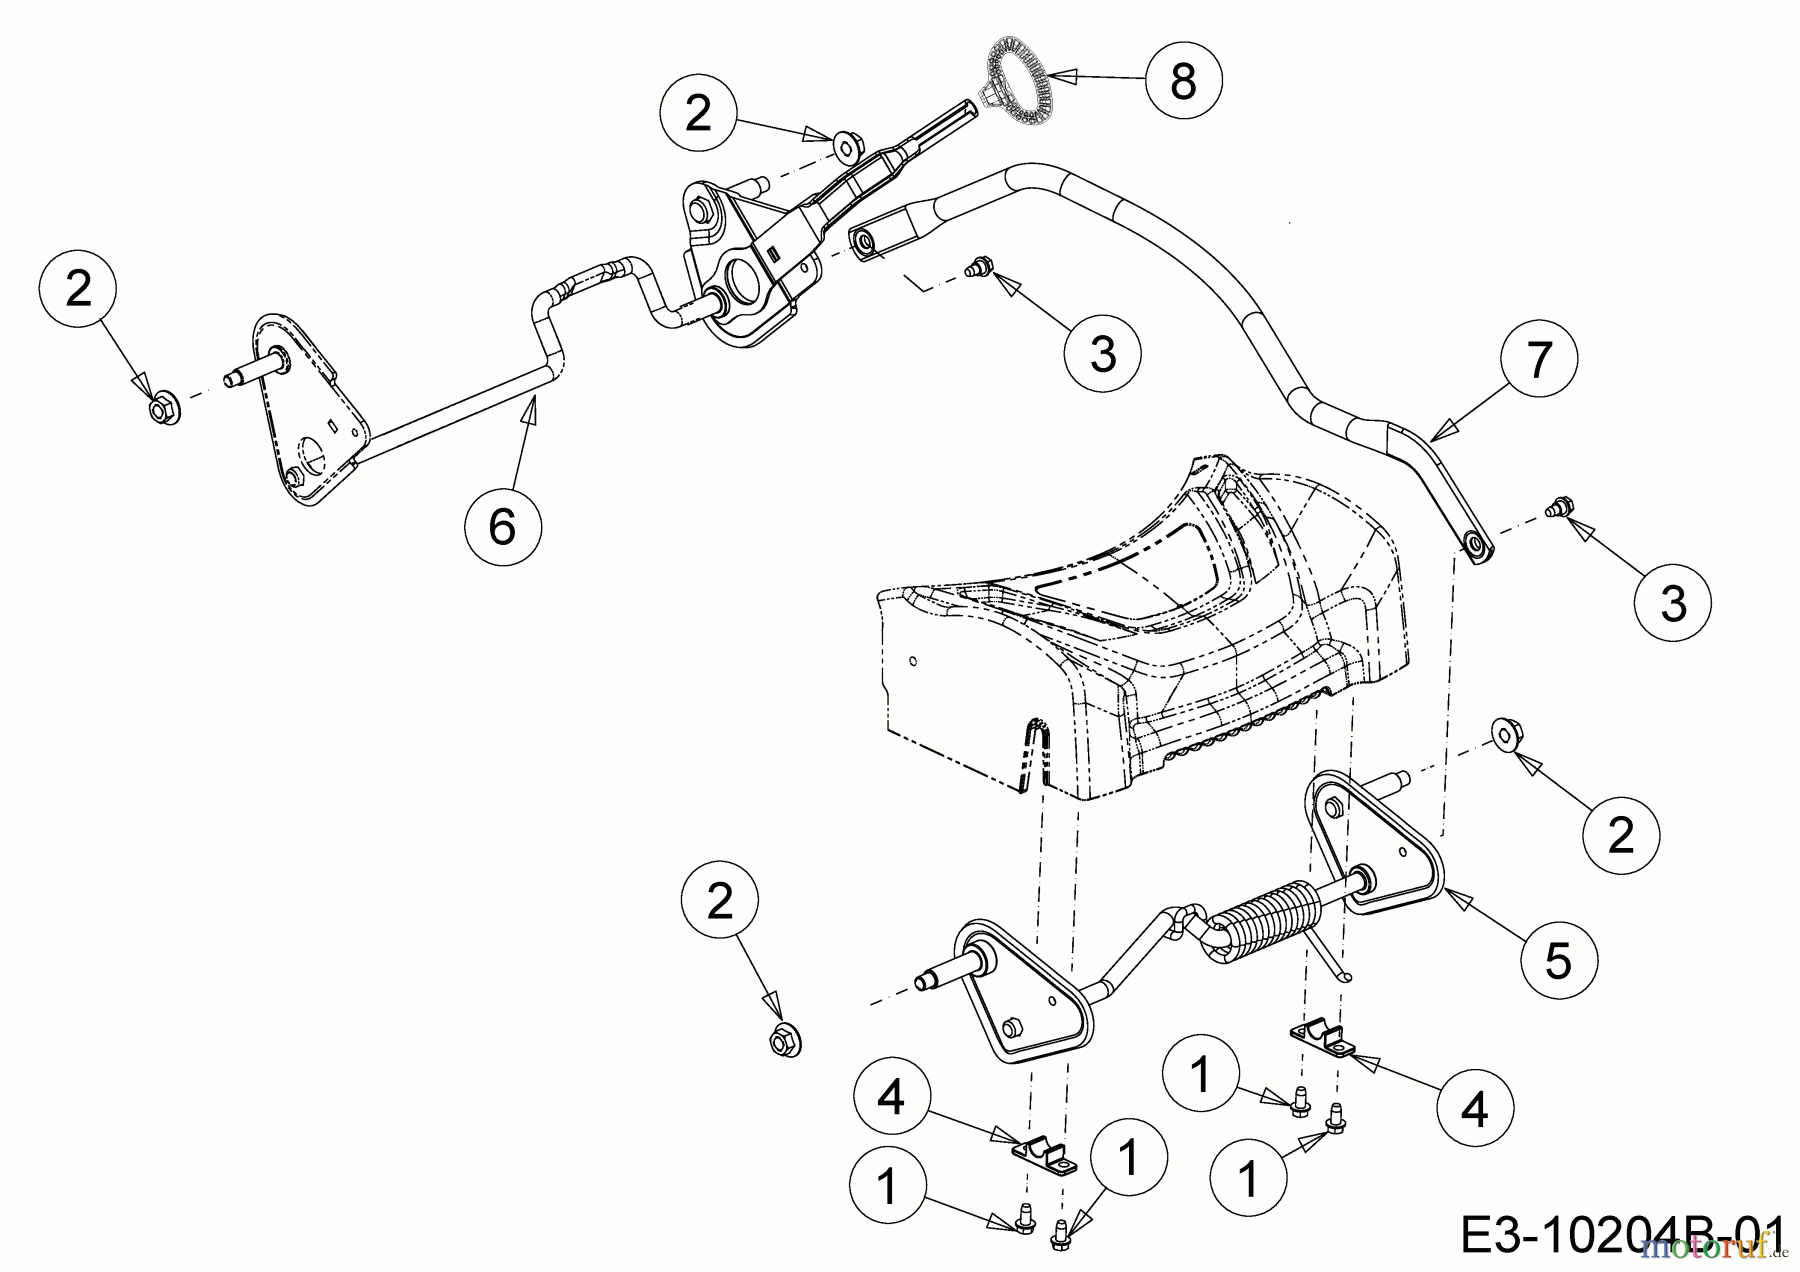  Wolf-Garten Motormäher mit Antrieb AH 4200 H 12A-LV5B650  (2018) Achsen, Höhenverstellung